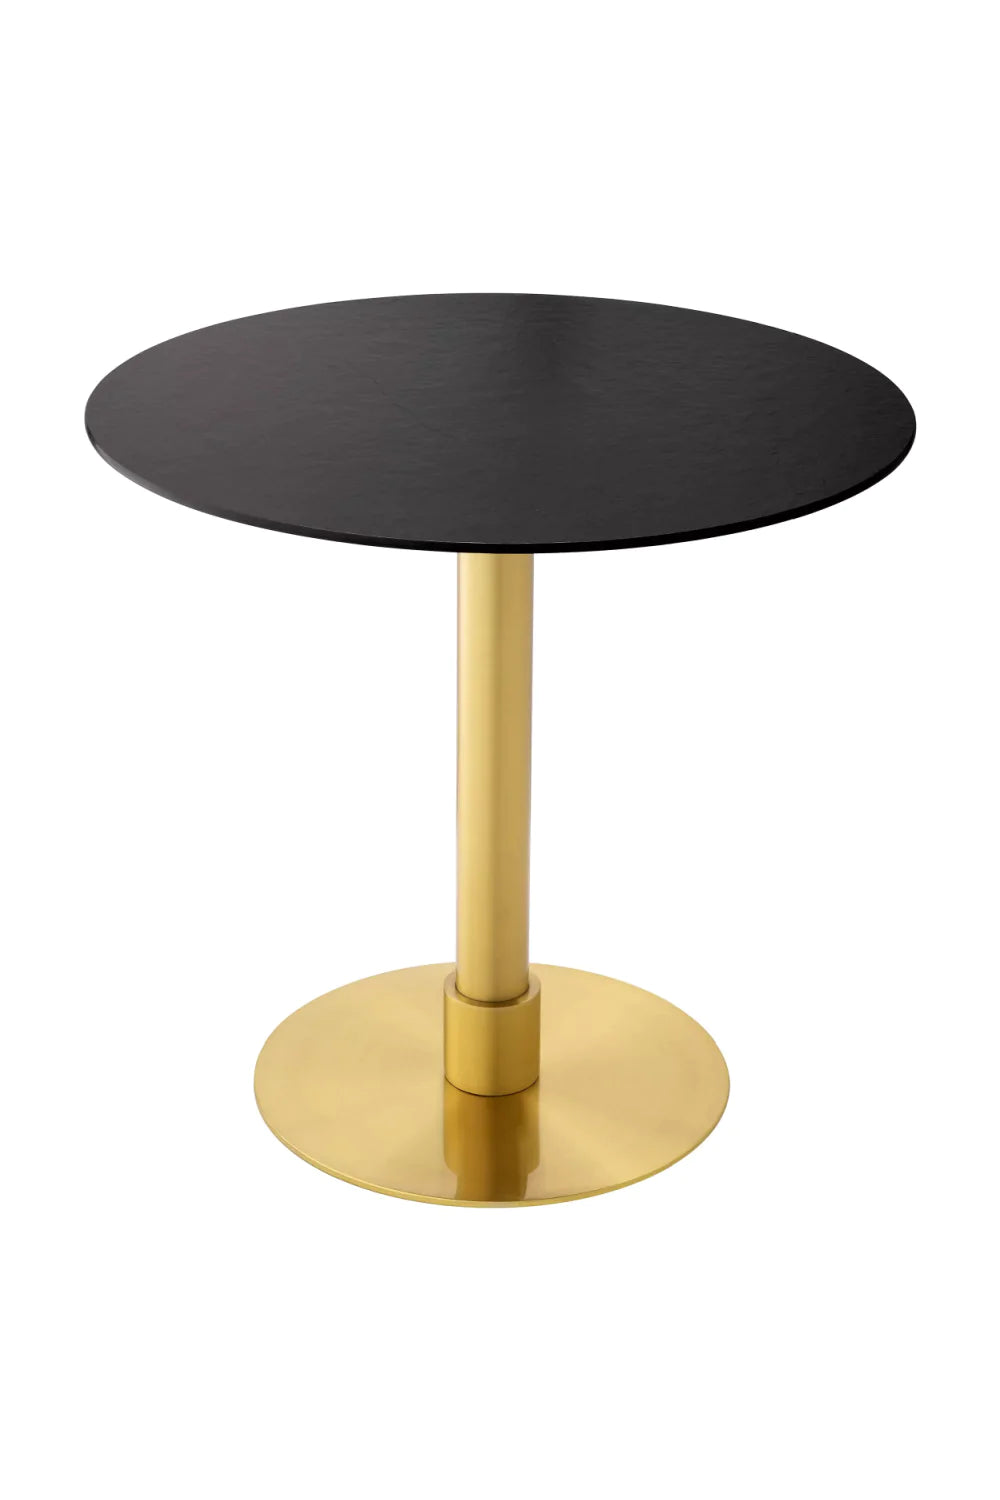 Ceramic Pedestal Dining Table | Eichholtz Terzo | Oroa.com